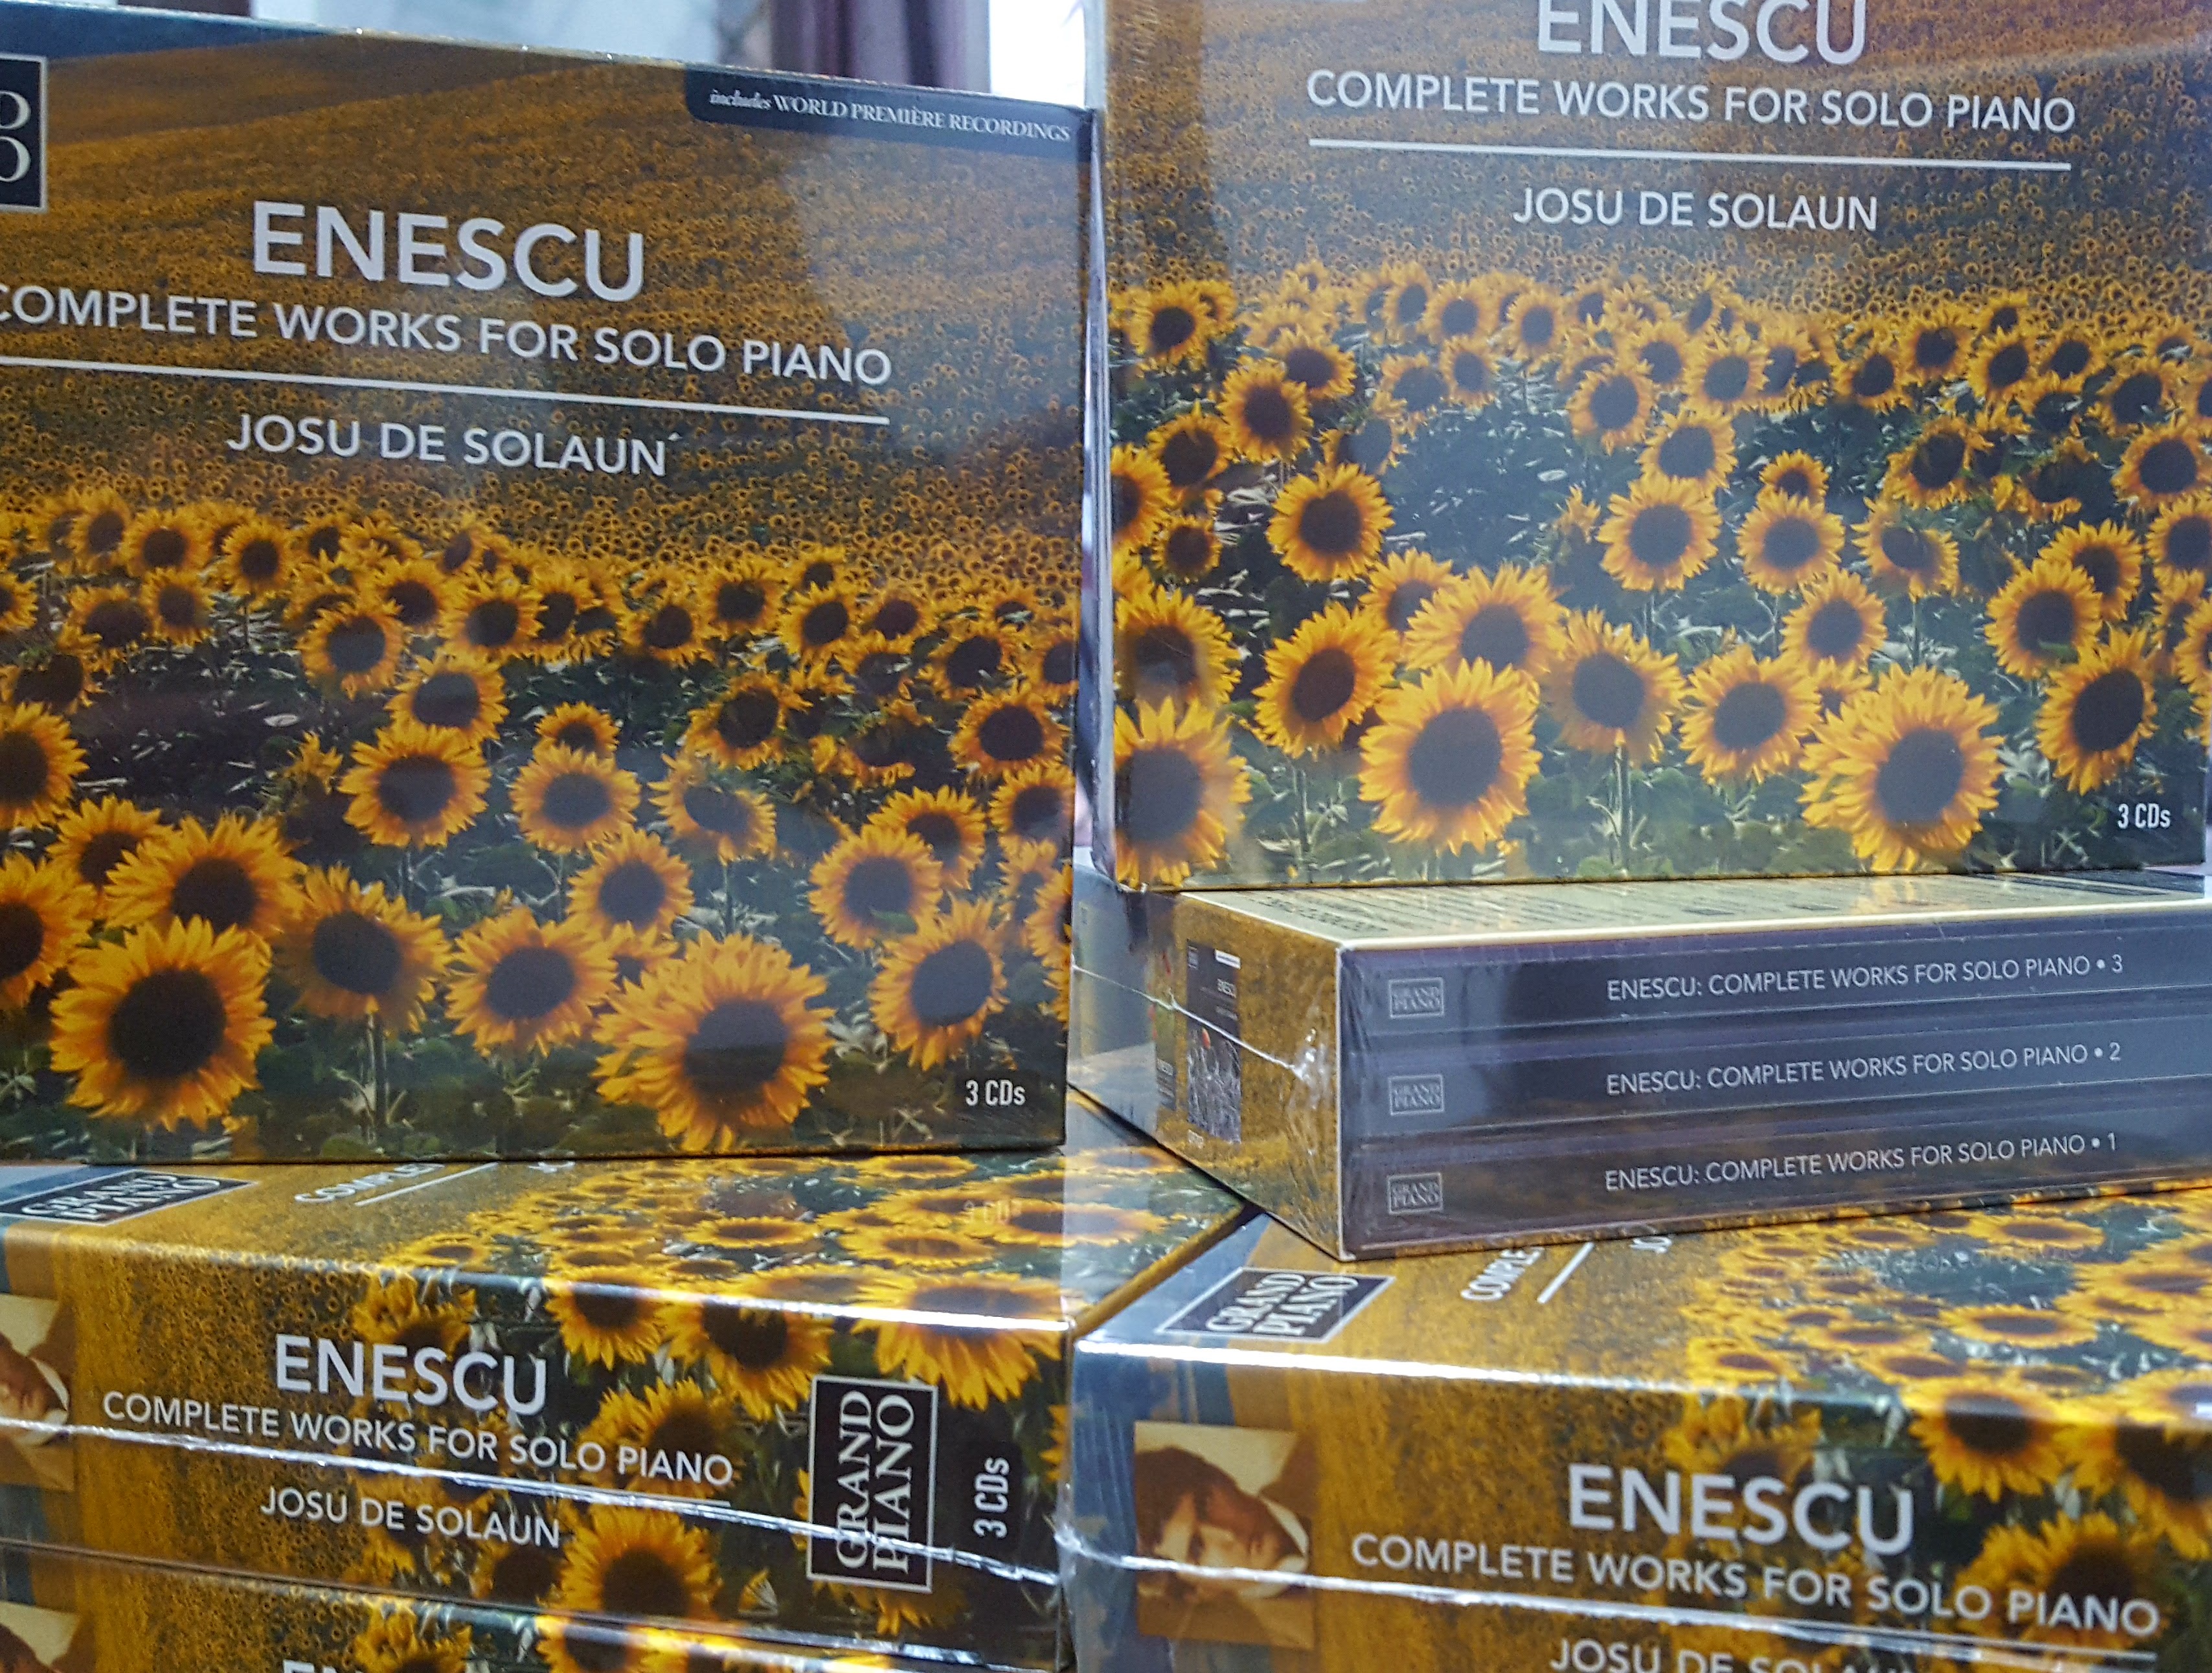 Enescu.Complete works for solo piano. Josu de Solaun